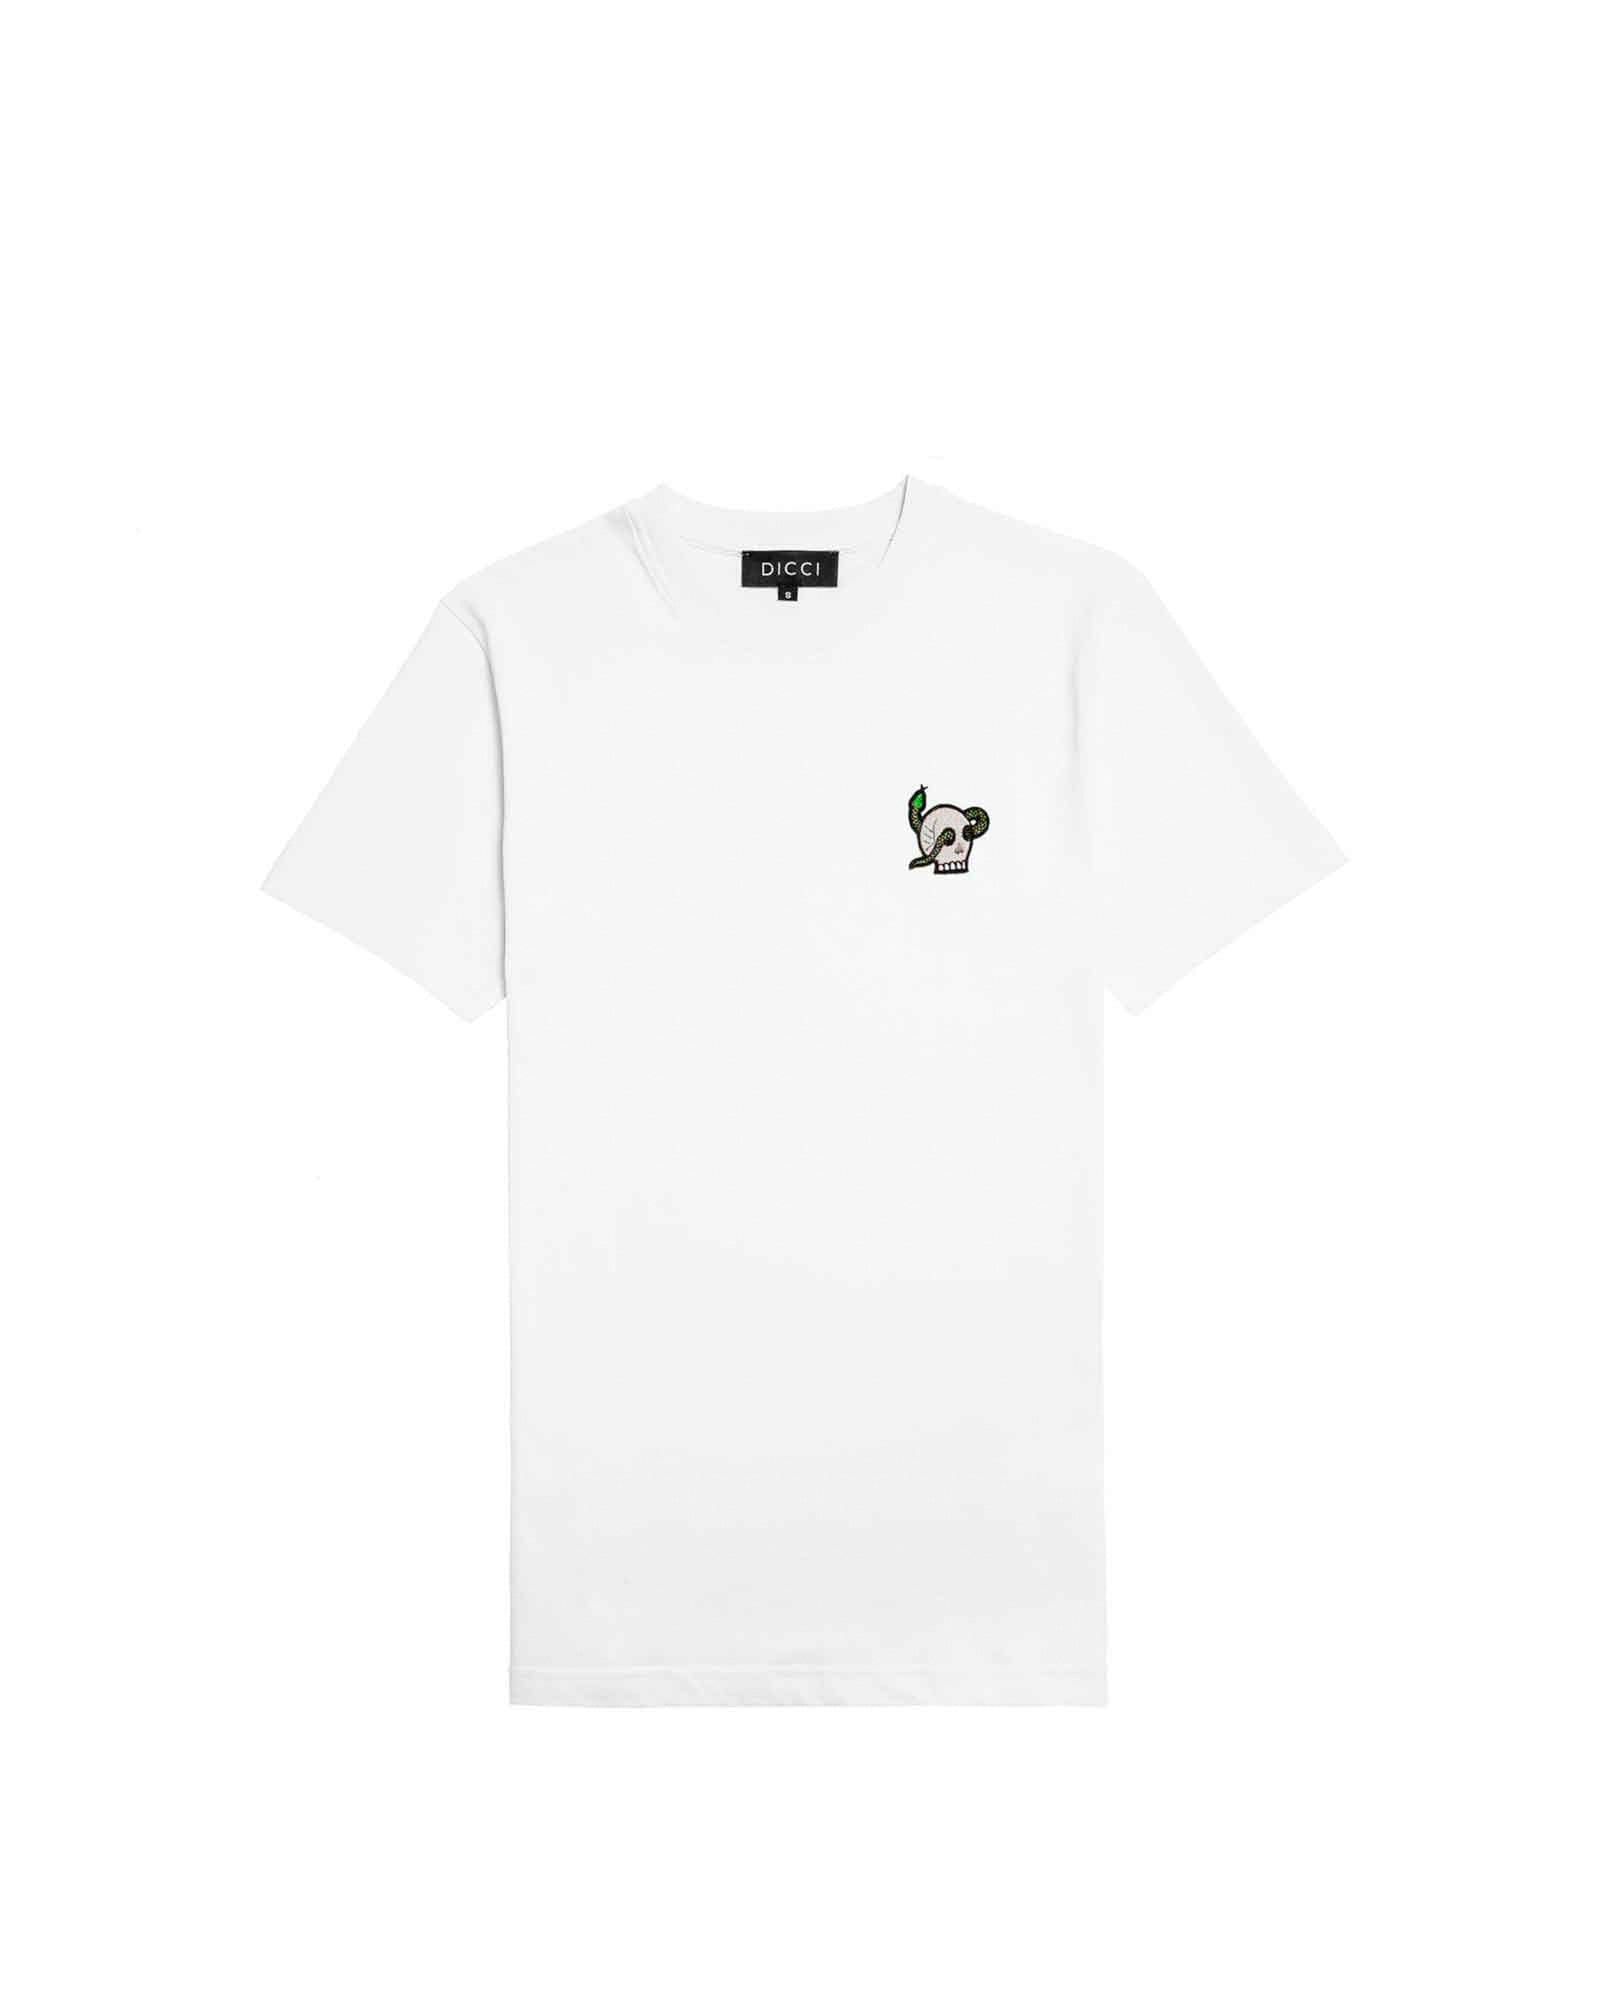 Camiseta Negra con Estampado Flying Bird - Comprar camisetas – DICCI